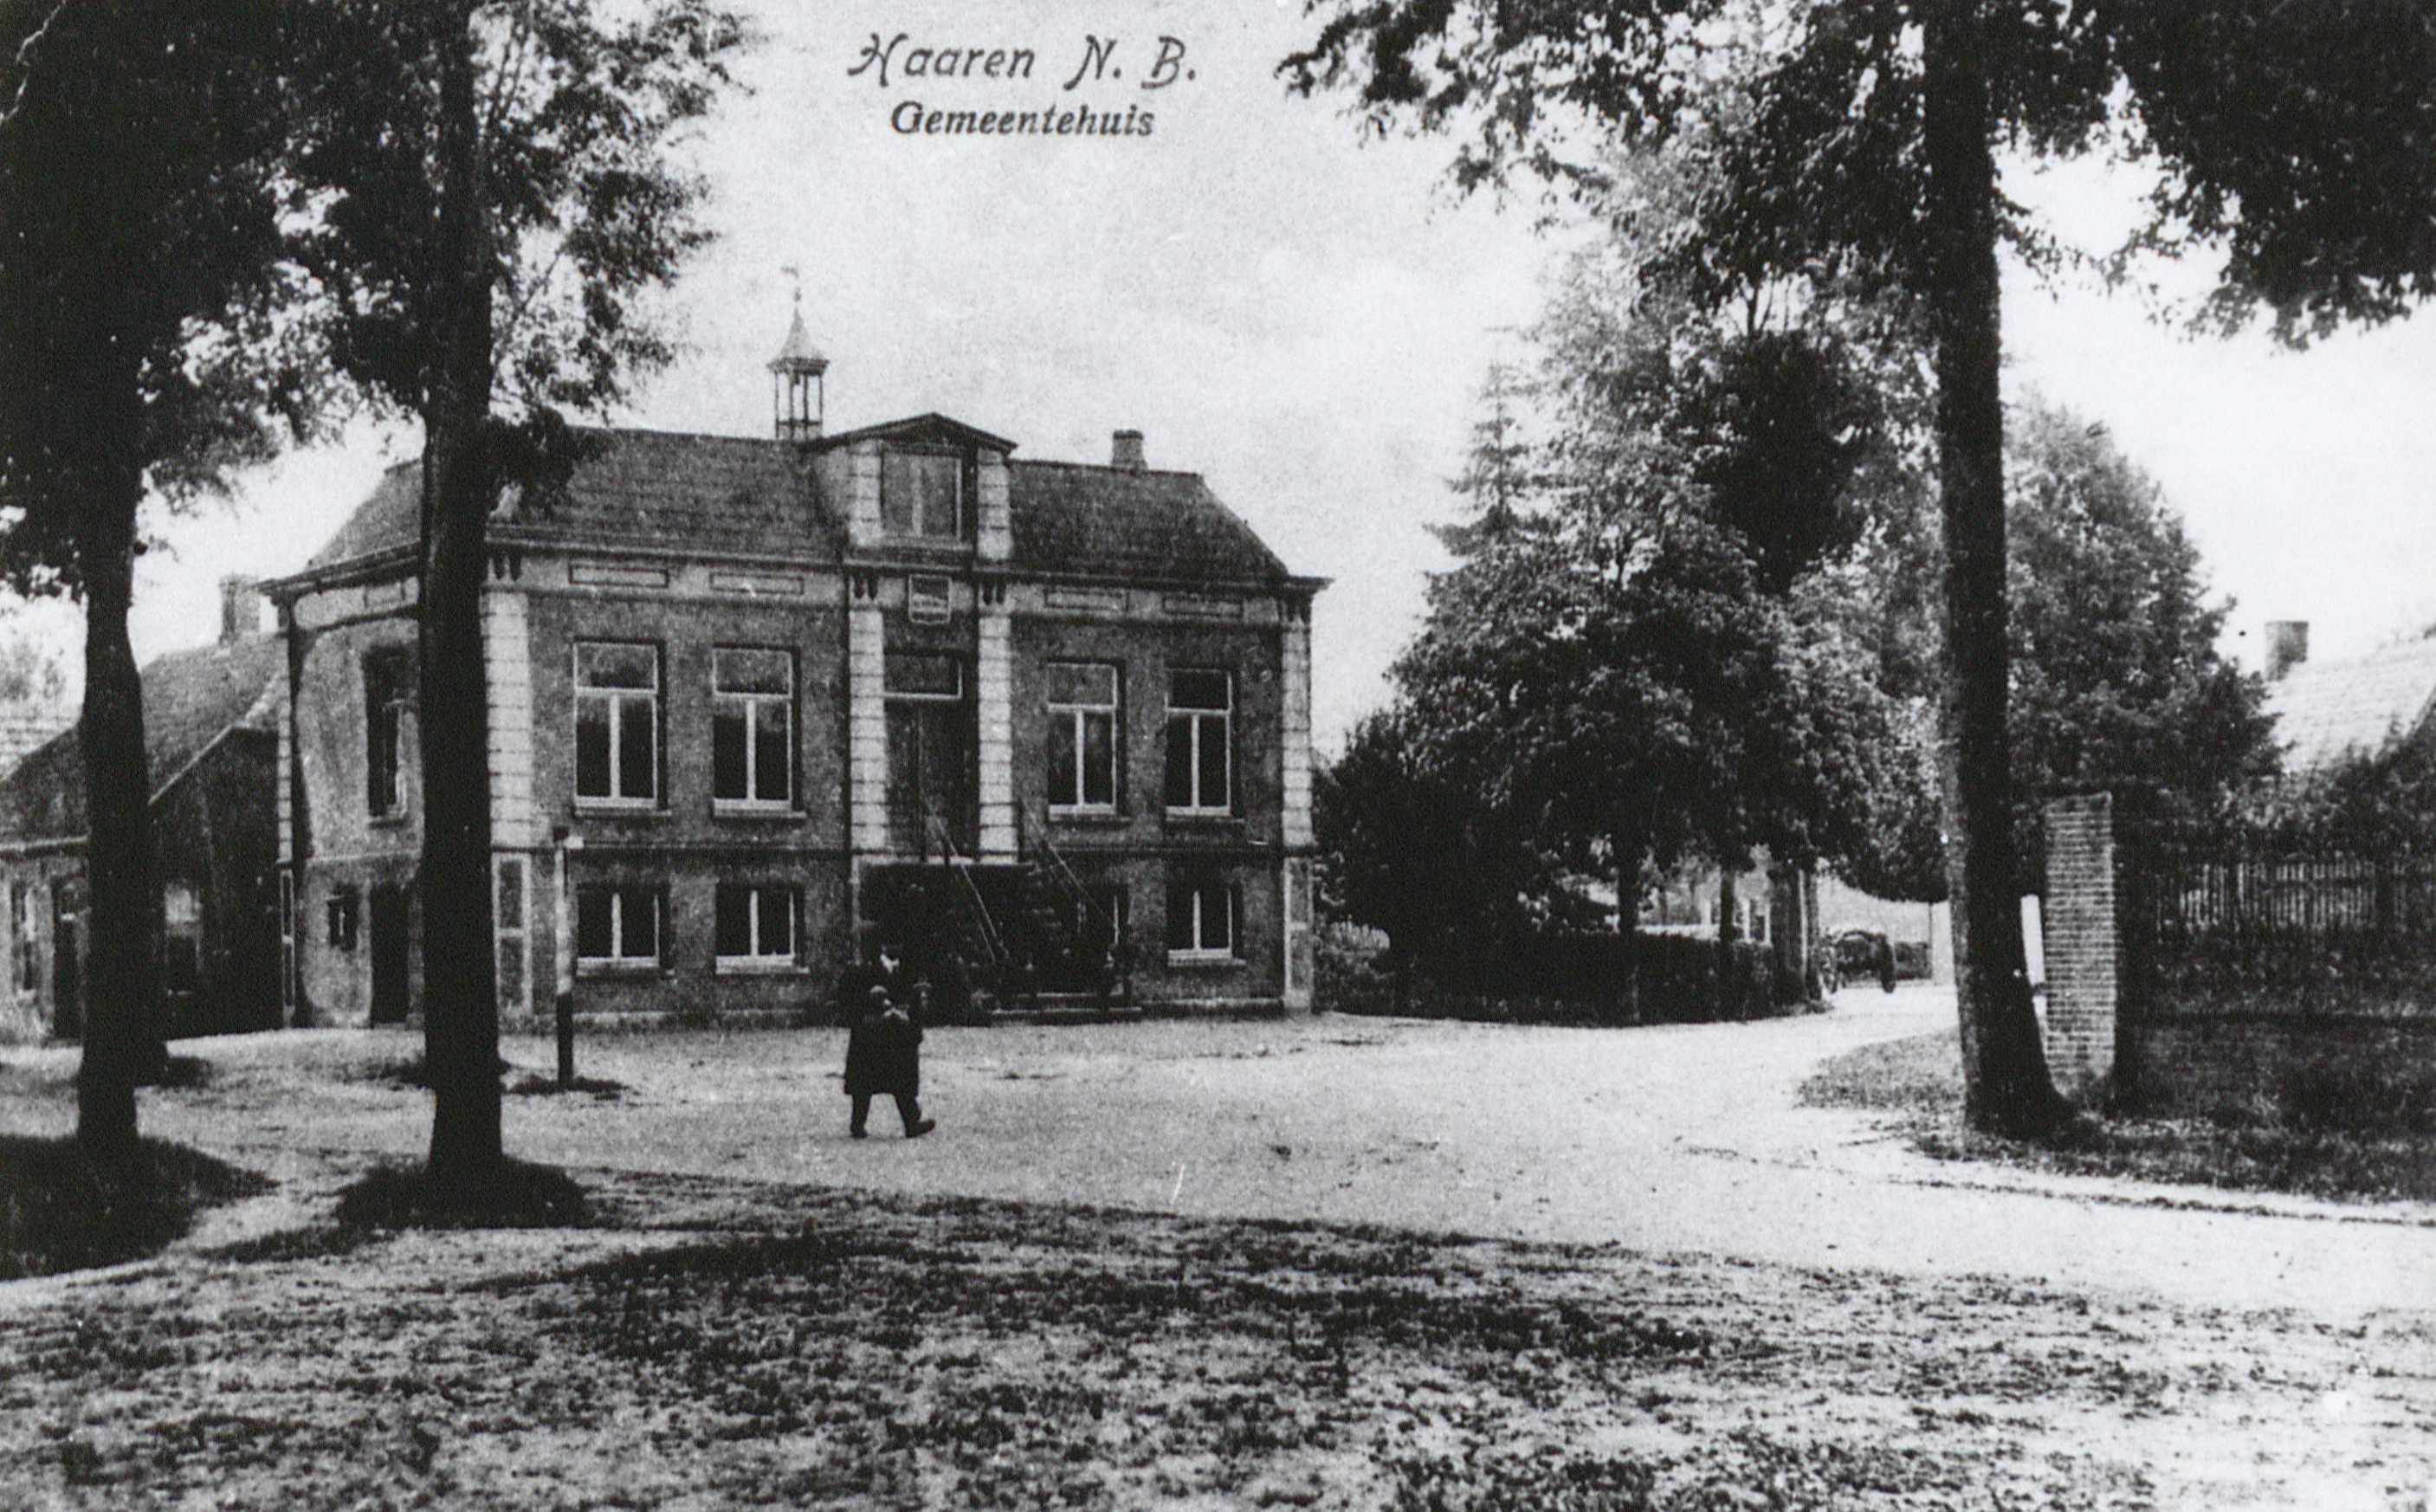 Het oude gemeentehuis / raadhuis van Haaren ca. 1900